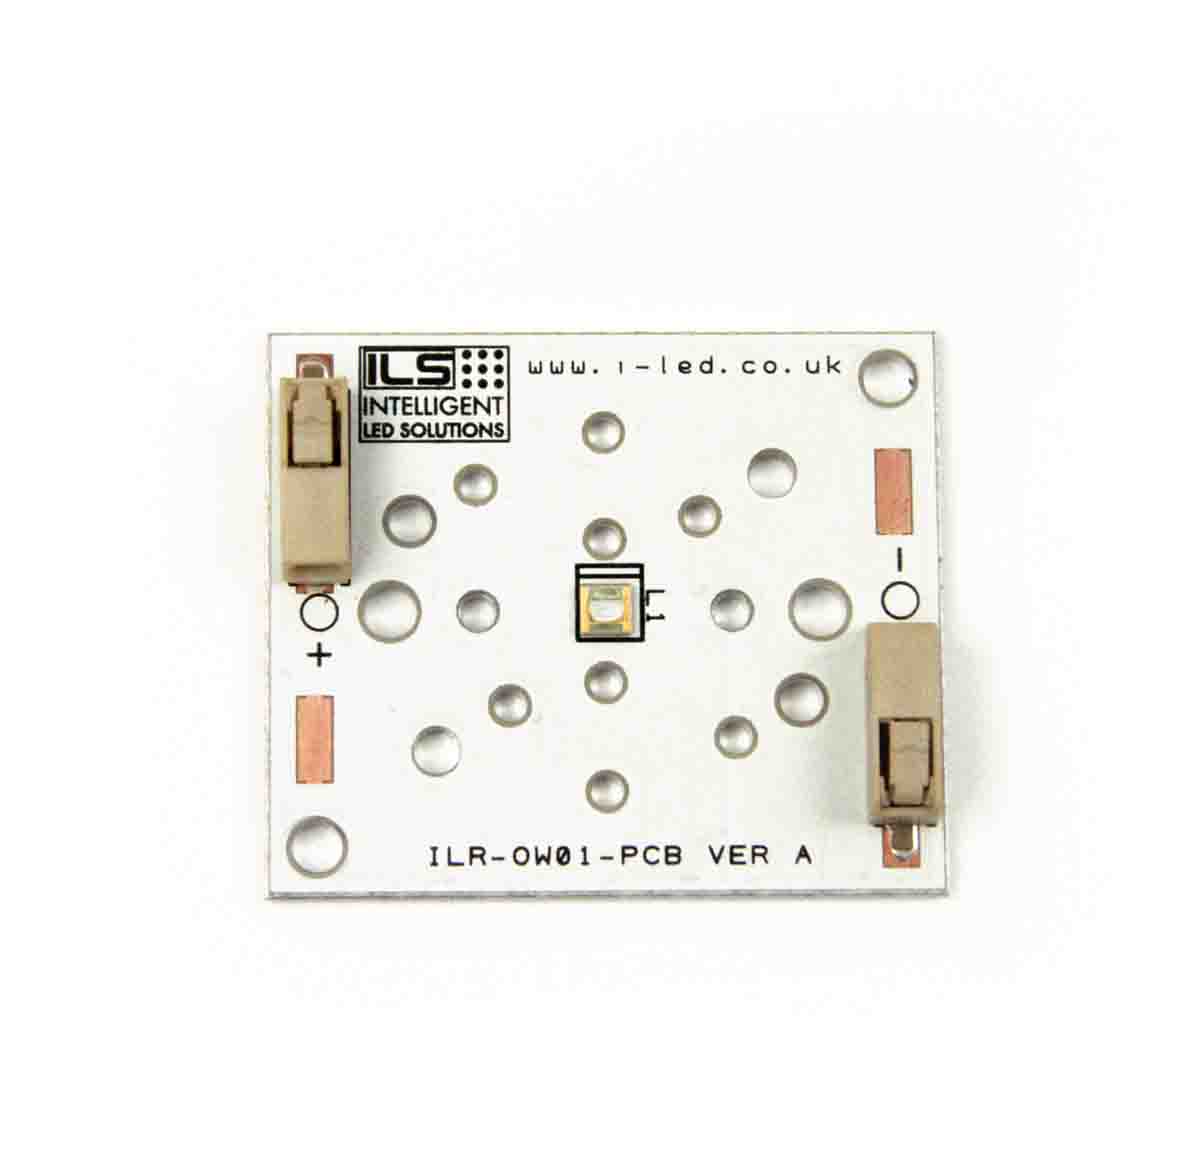 ILR-XP01-S270-LEDIL-SC201. Intelligent LED Solutions, UV LED